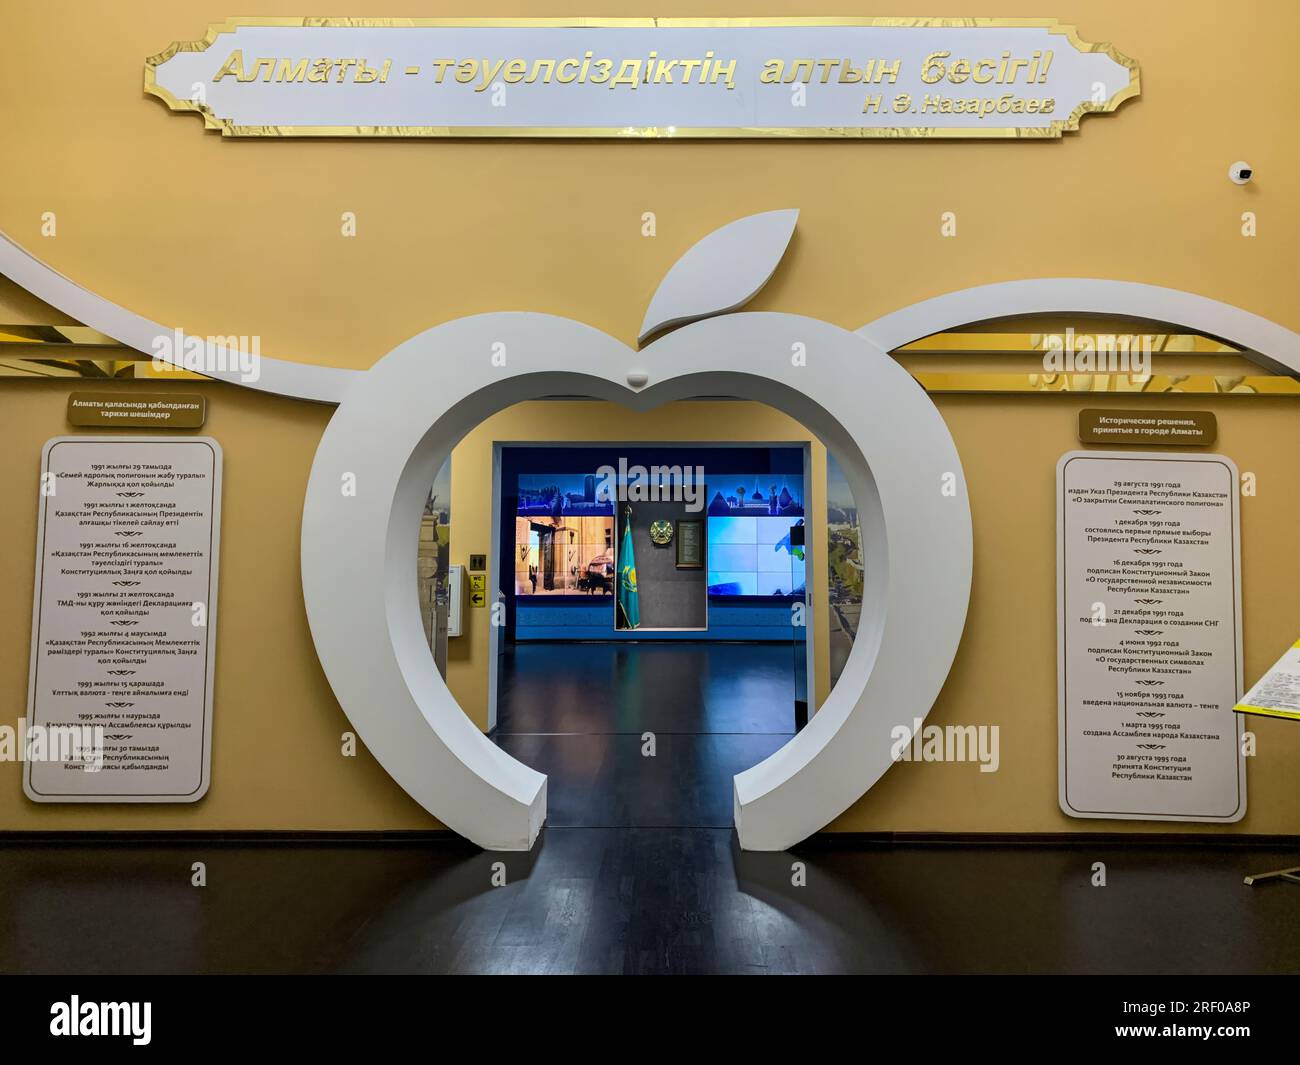 Kazakistan, Almaty. Museo di storia di Almaty, vista interna. Il Kazakistan sostiene di essere il luogo in cui le mele sono state scoperte per la prima volta. Foto Stock